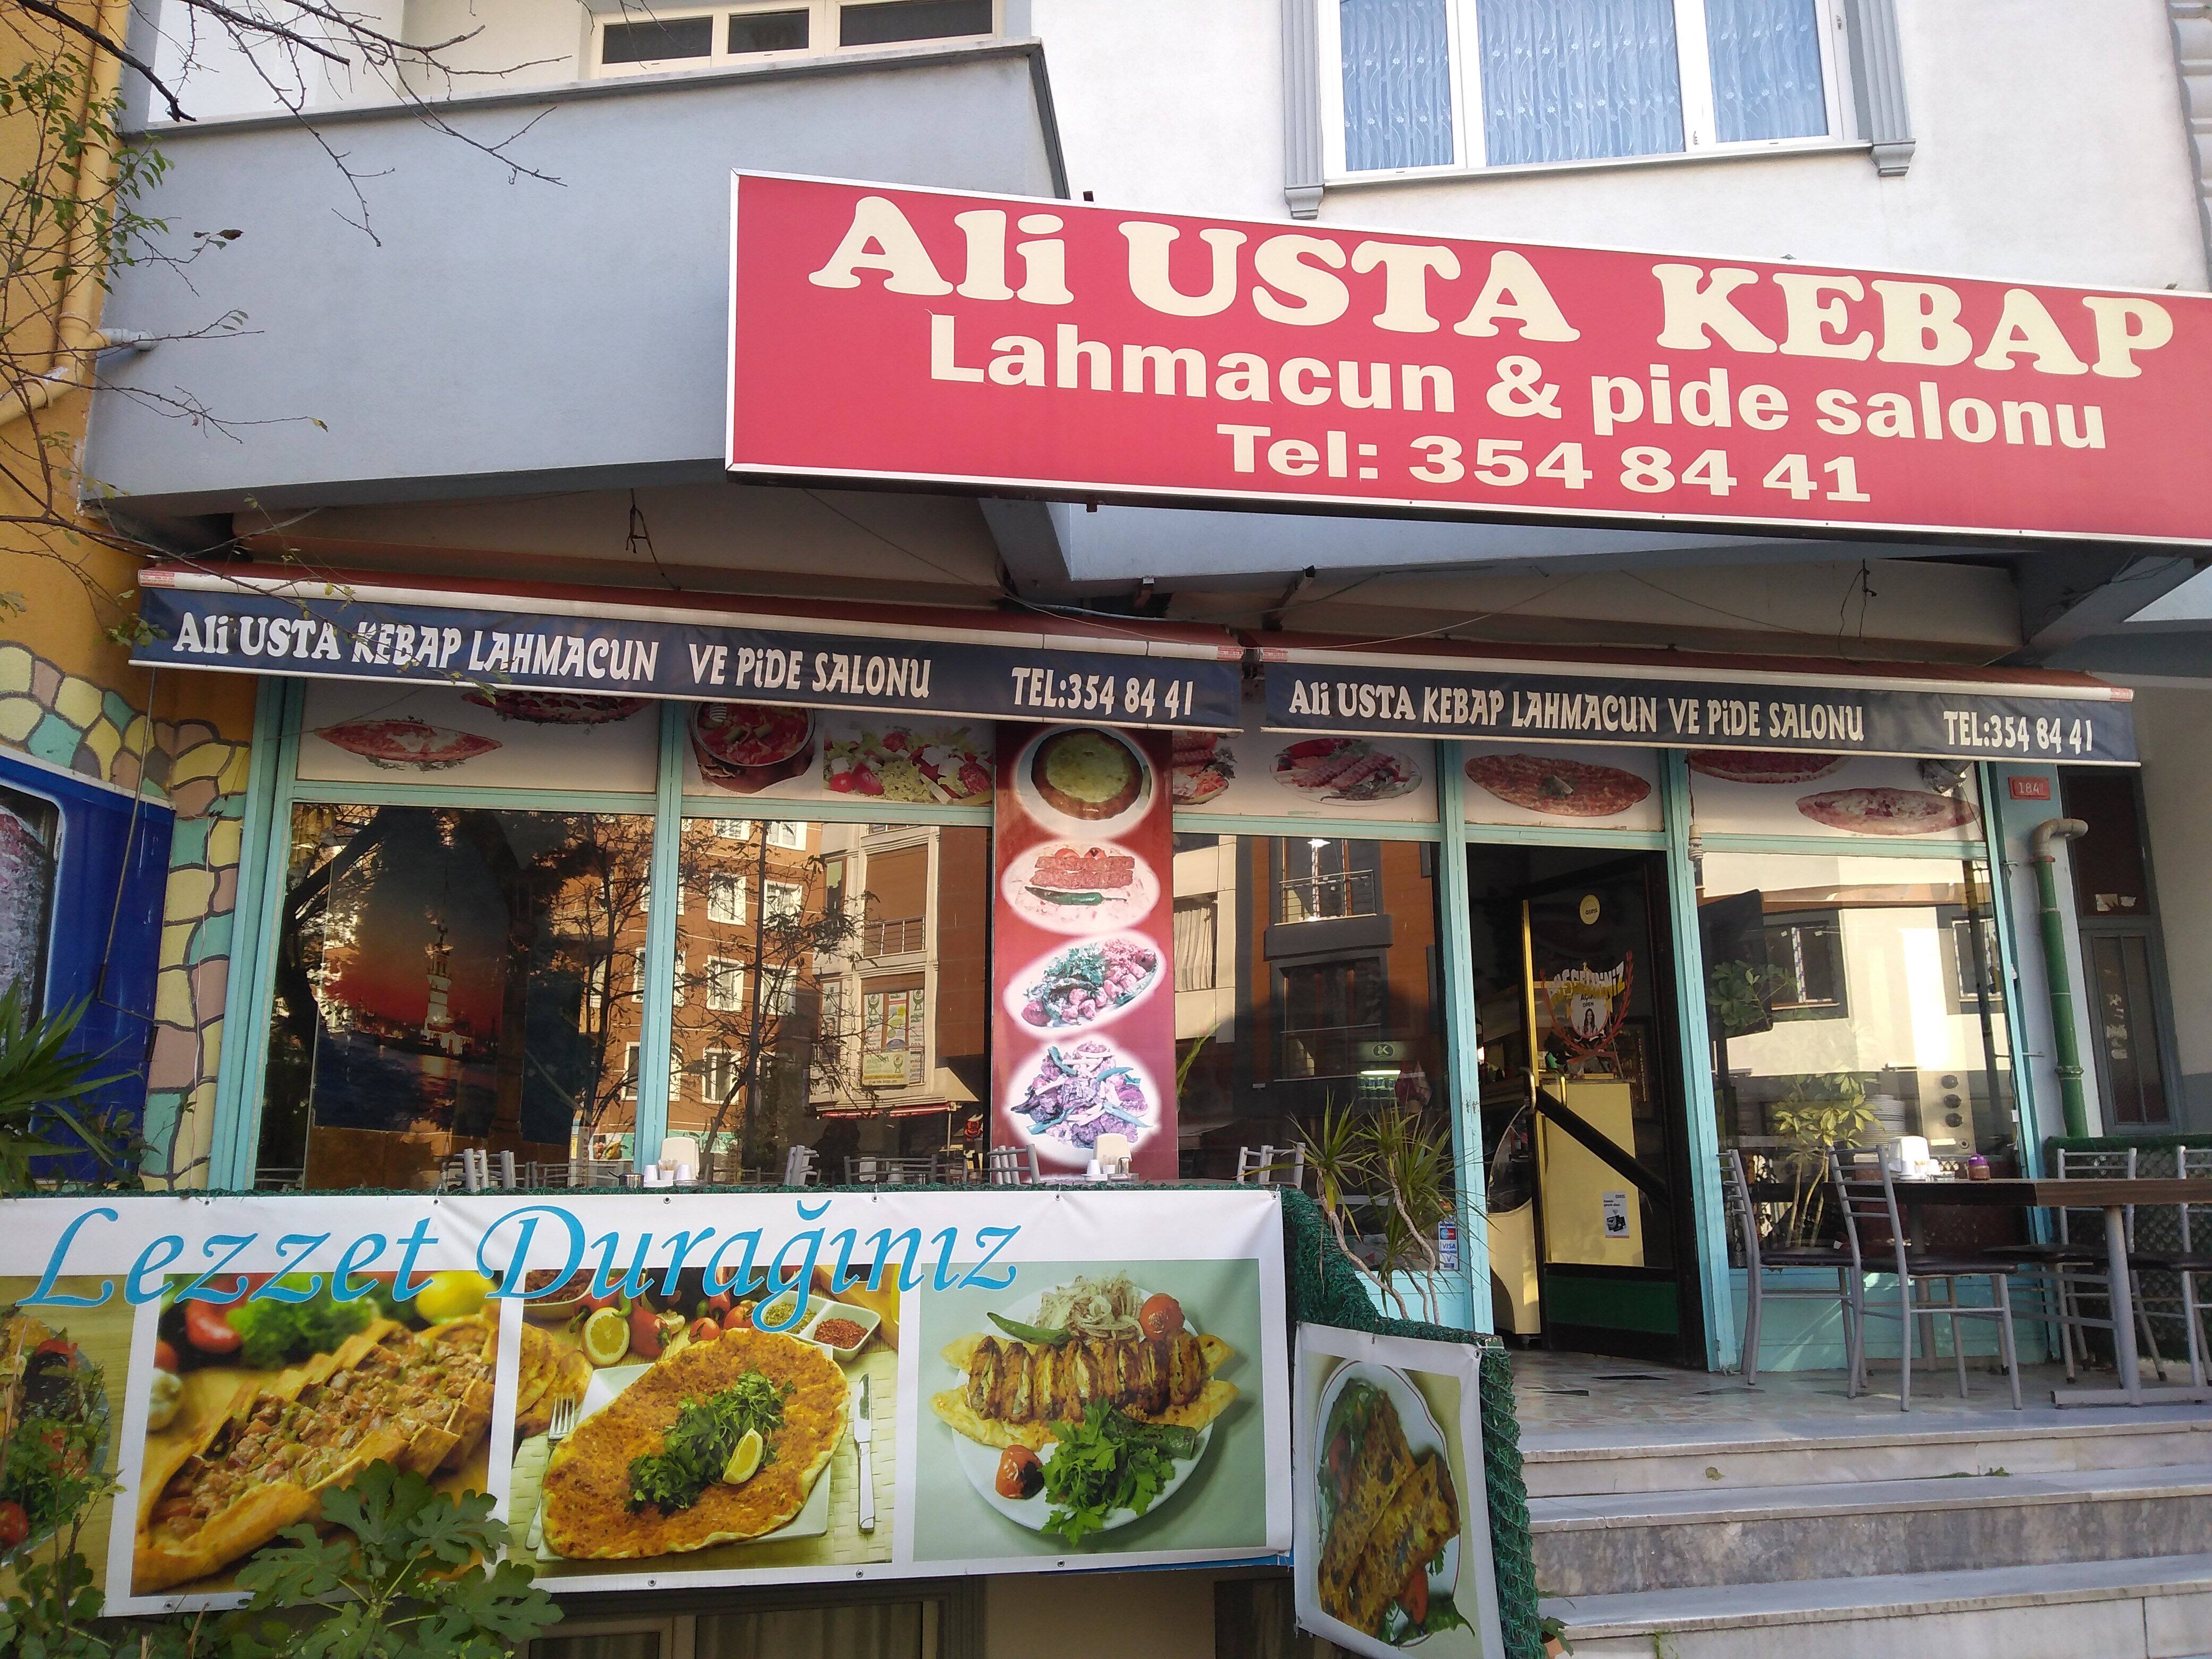 Ali Usta Kebap Kaynarca Istanbul